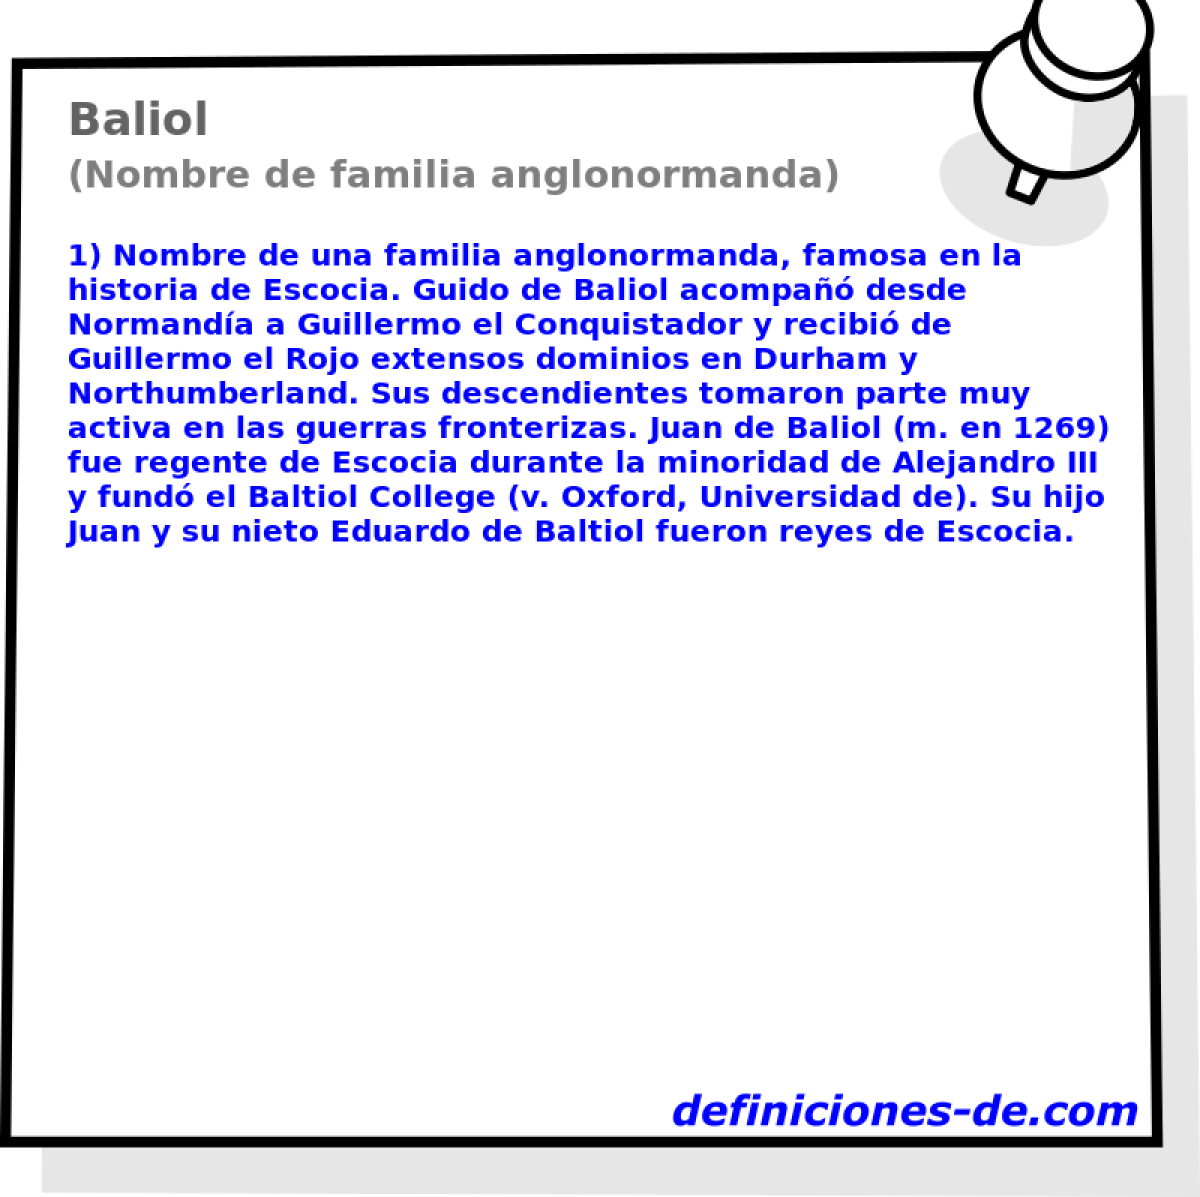 Baliol (Nombre de familia anglonormanda)